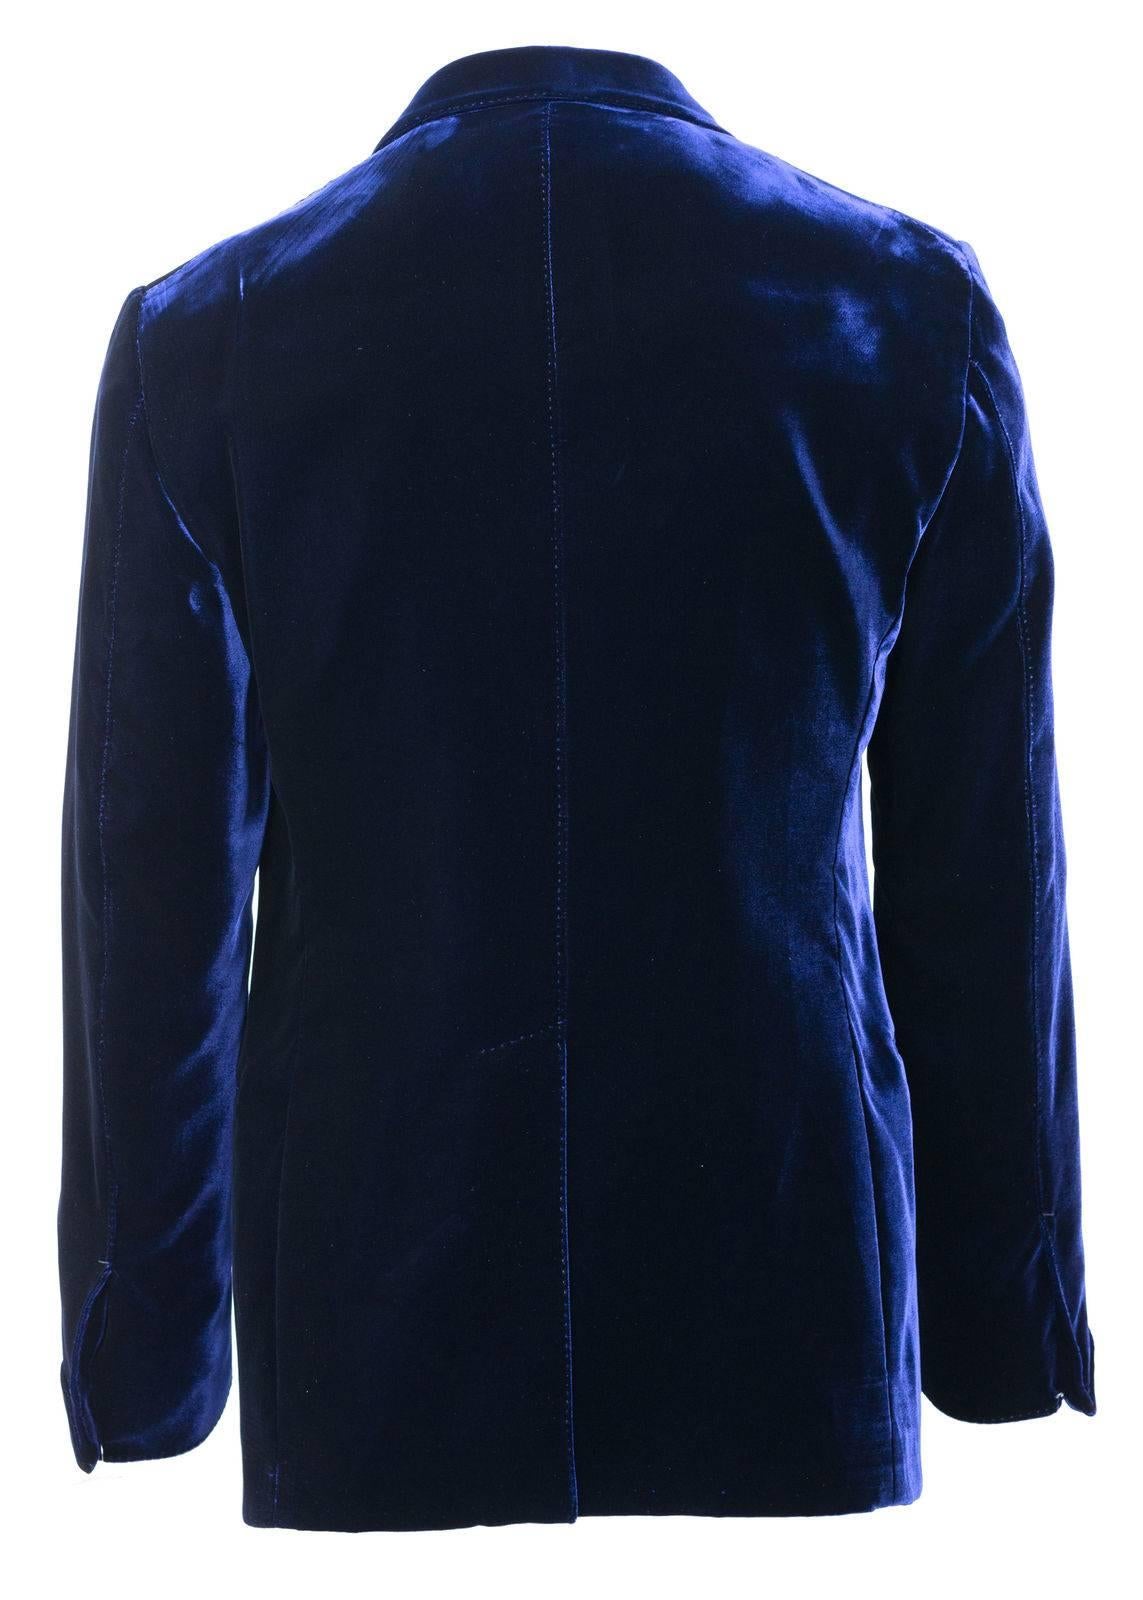 Black Tom Ford Dark Blue Velvet Conceal Hem Shelton Cocktail Jacket Sz 48/38R RTL$3980